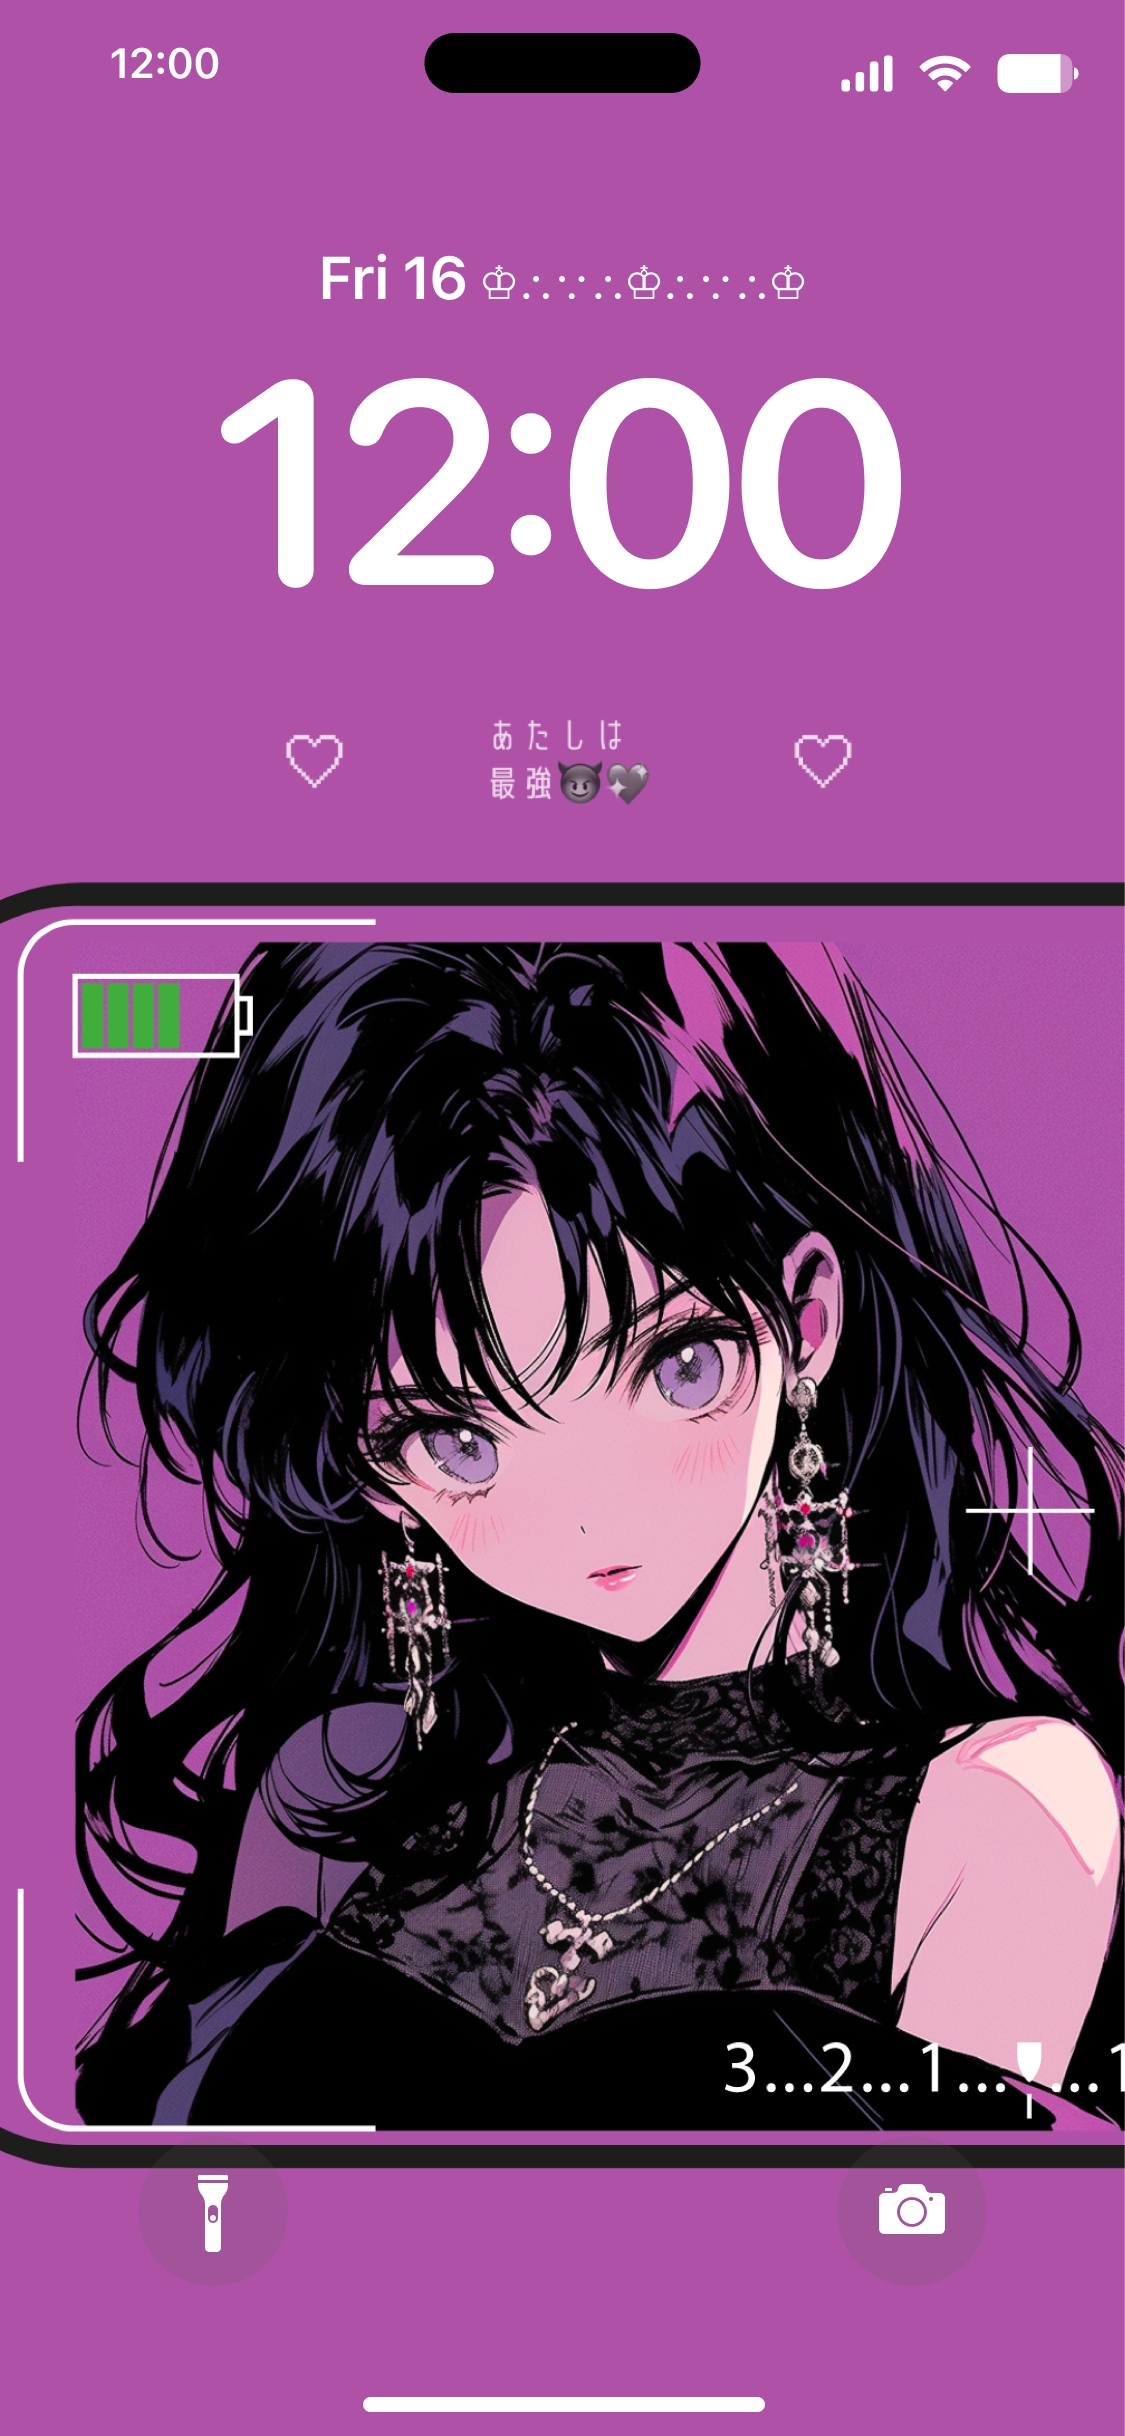 Aesthetic Anime Girl iPhone Wallpapers - Top Những Hình Ảnh Đẹp